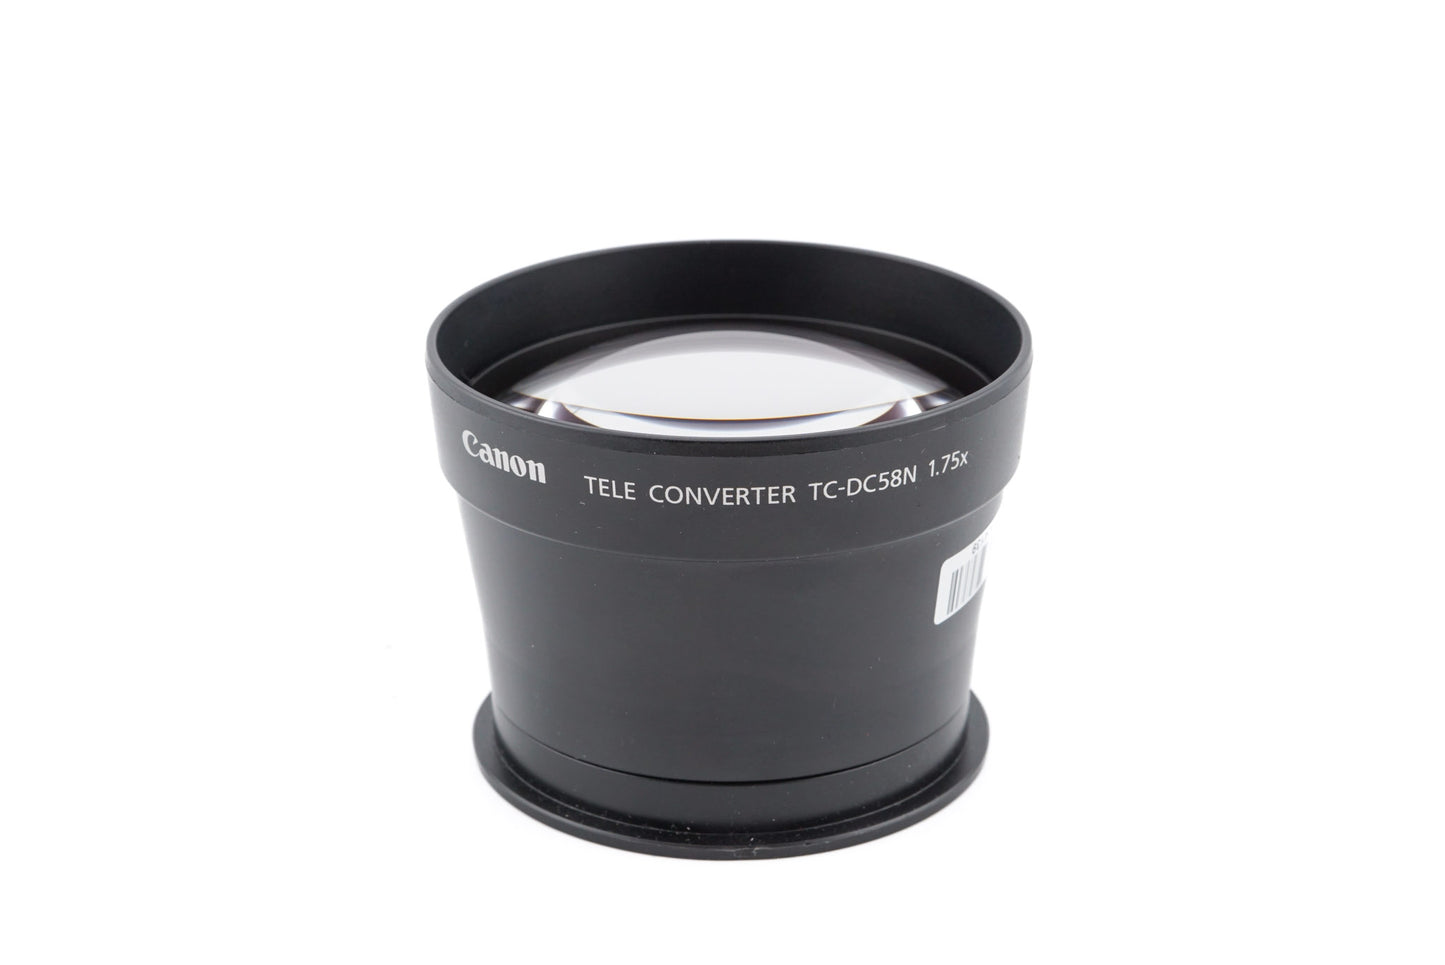 Canon 1.75x Tele Converter TC-DC58N - Accessory